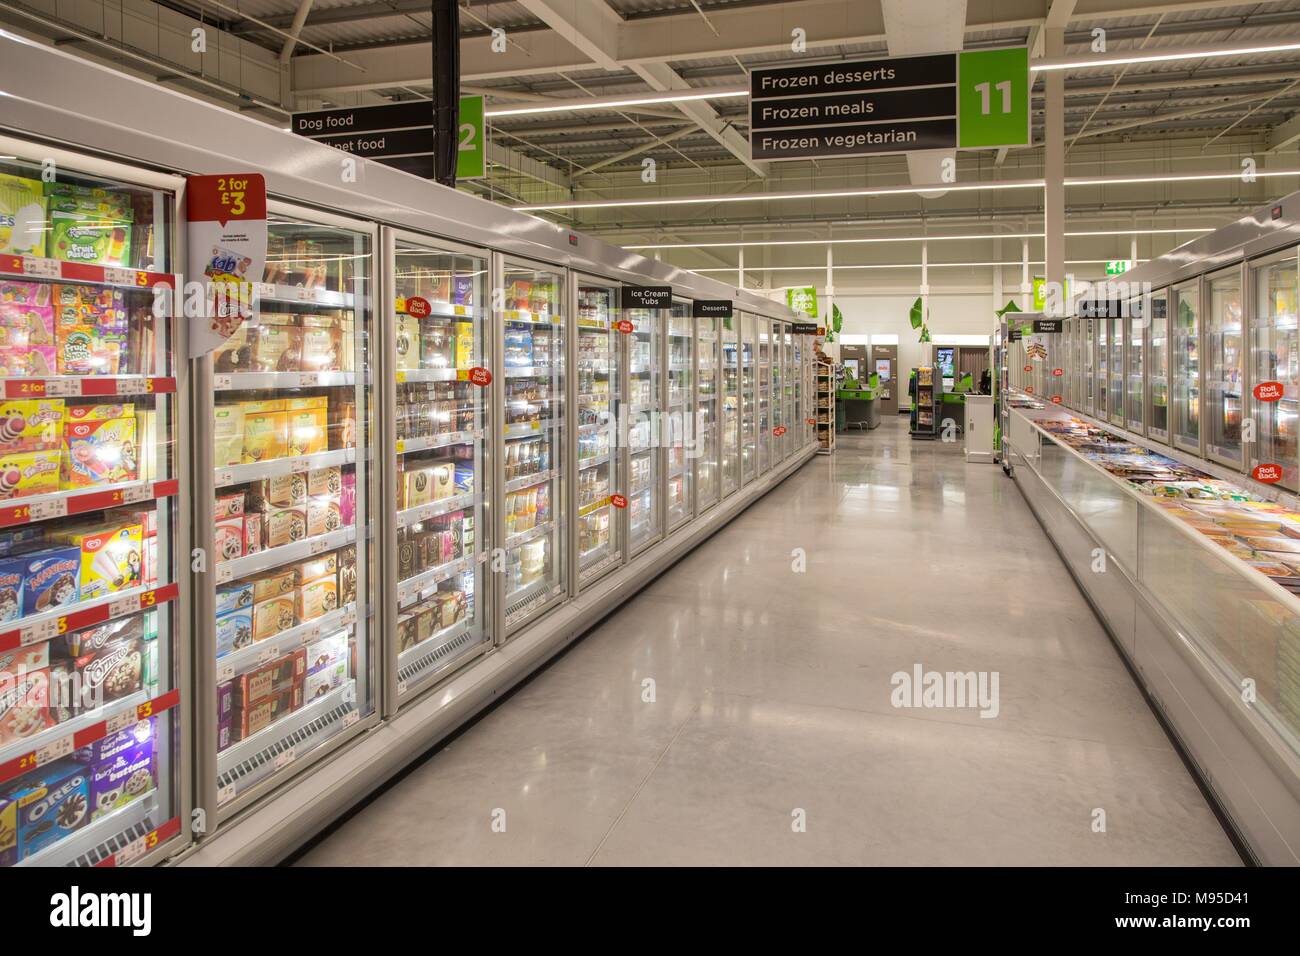 Desiertos helados y comidas, lleno arcones en un supermercado Asda. Foto de stock